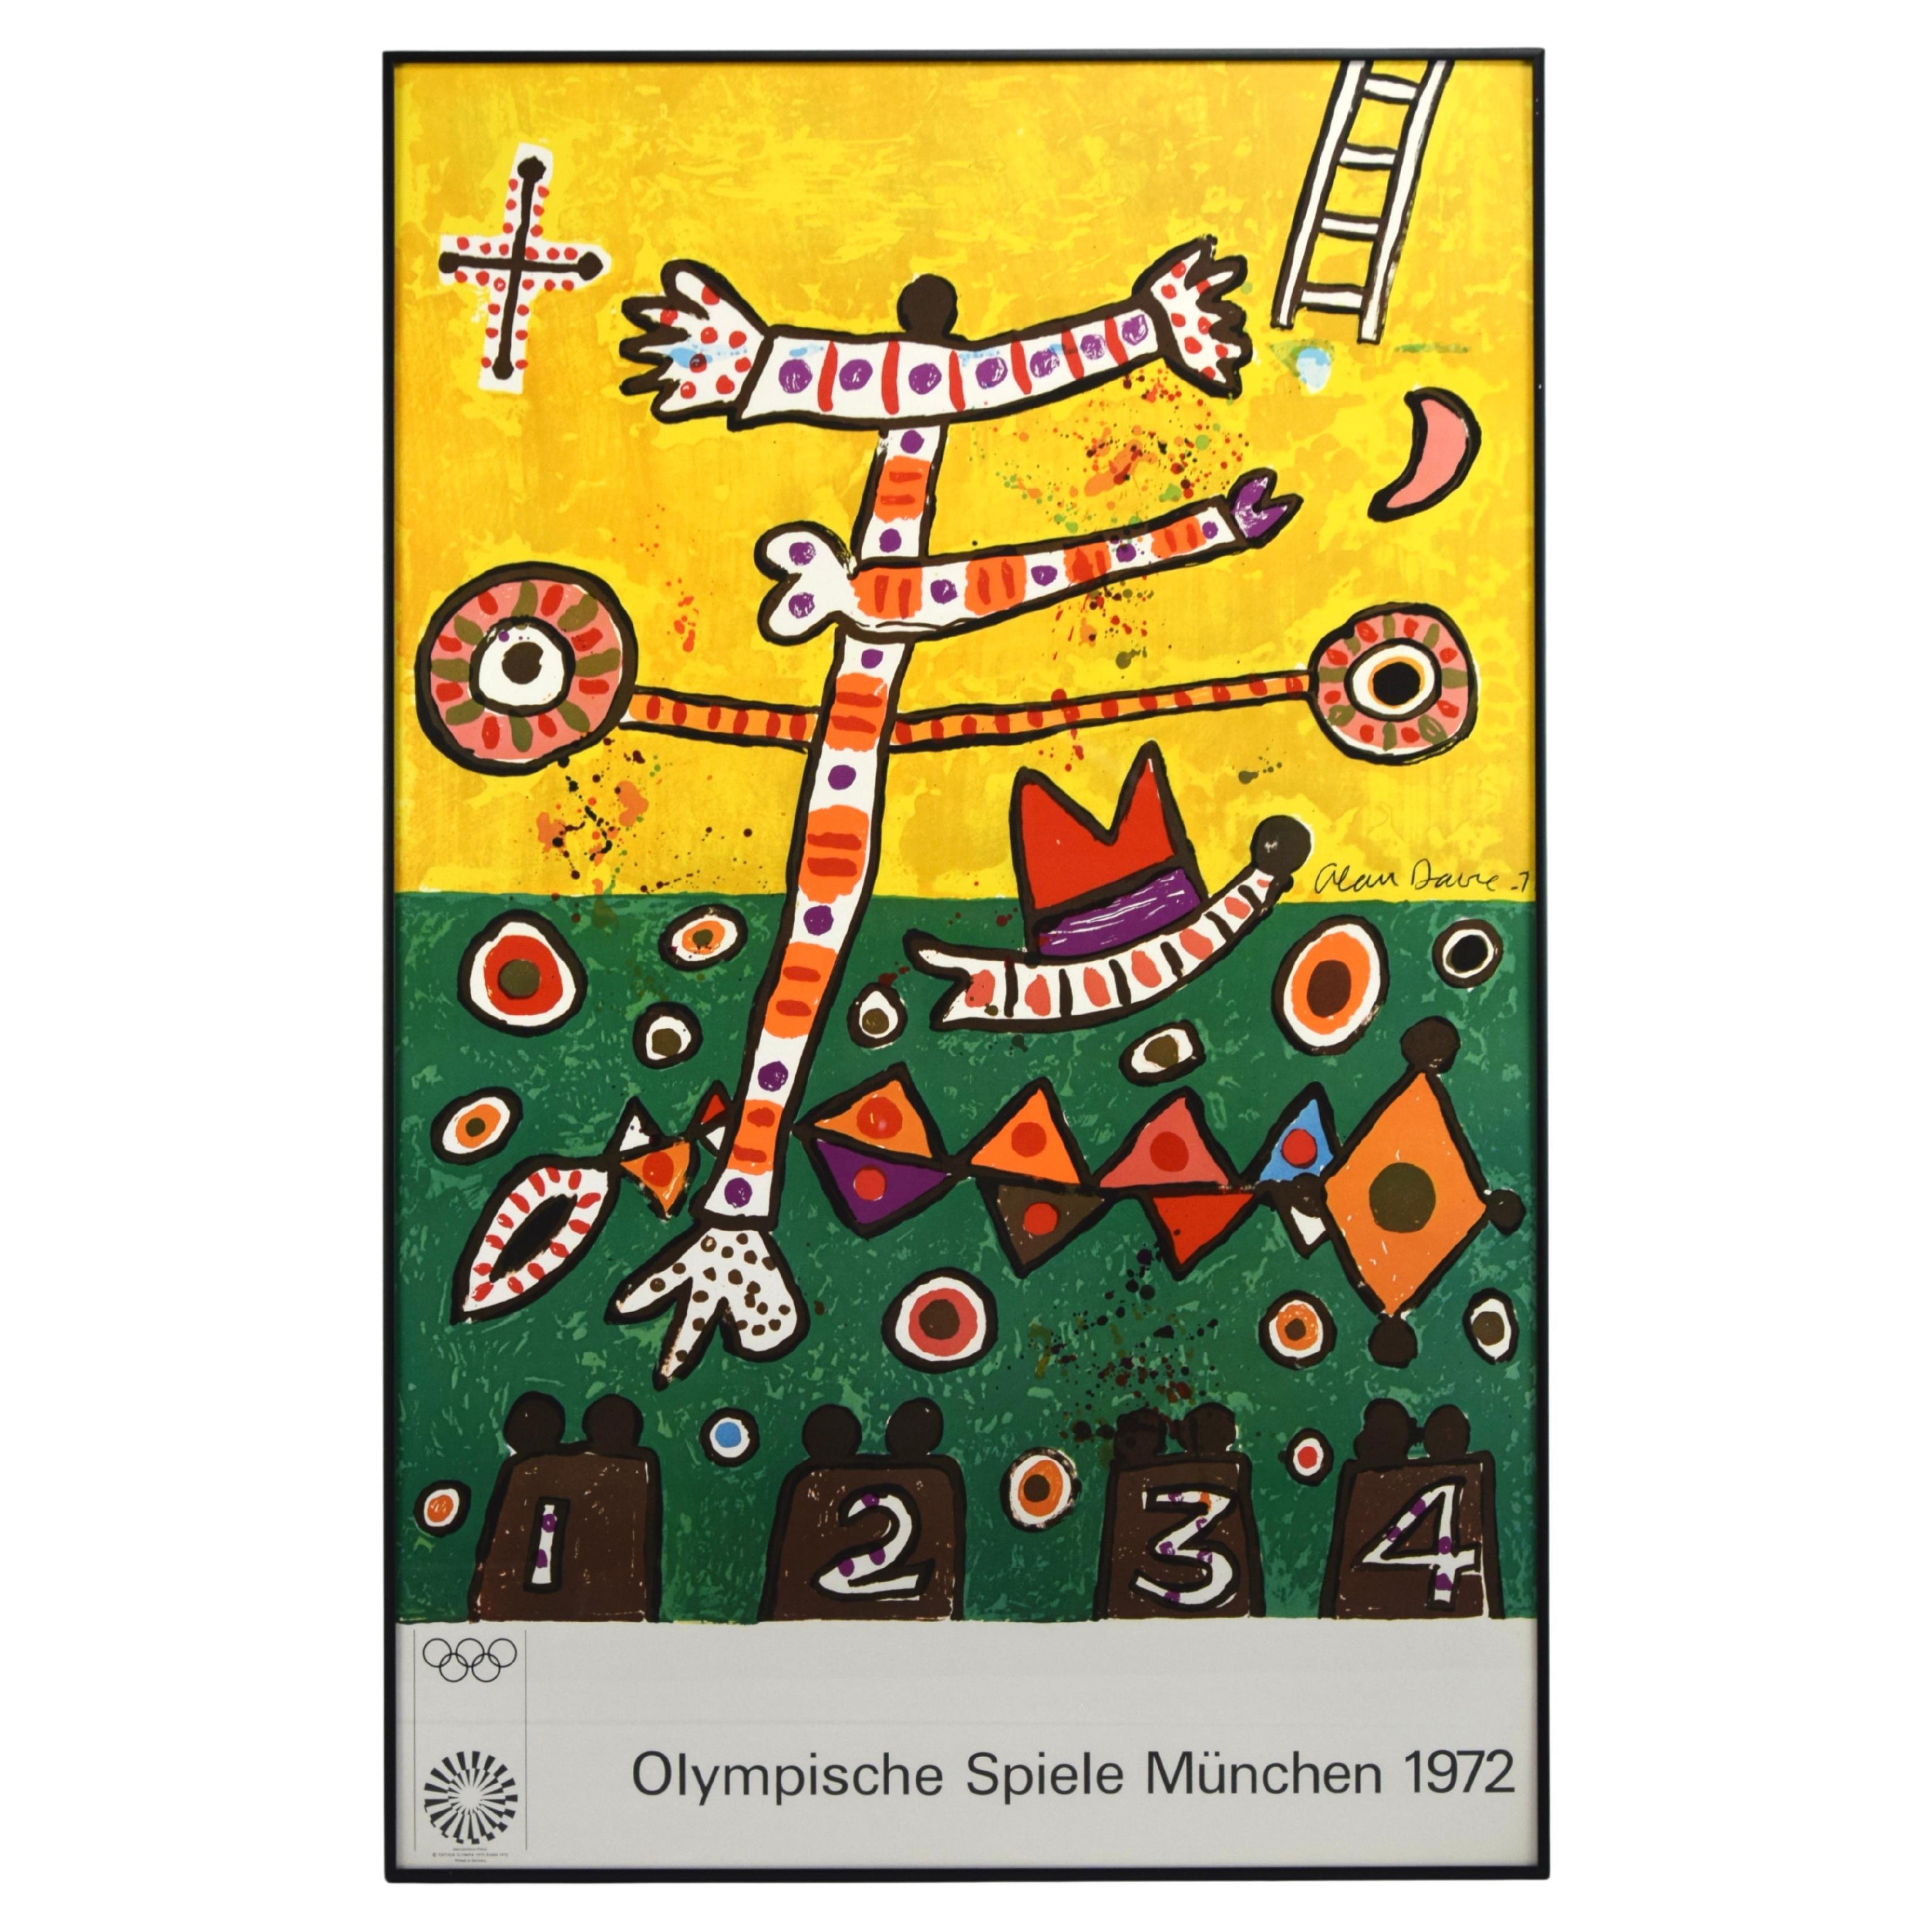 Cartel olímpico original de Múnich 1972 por Alan Davie